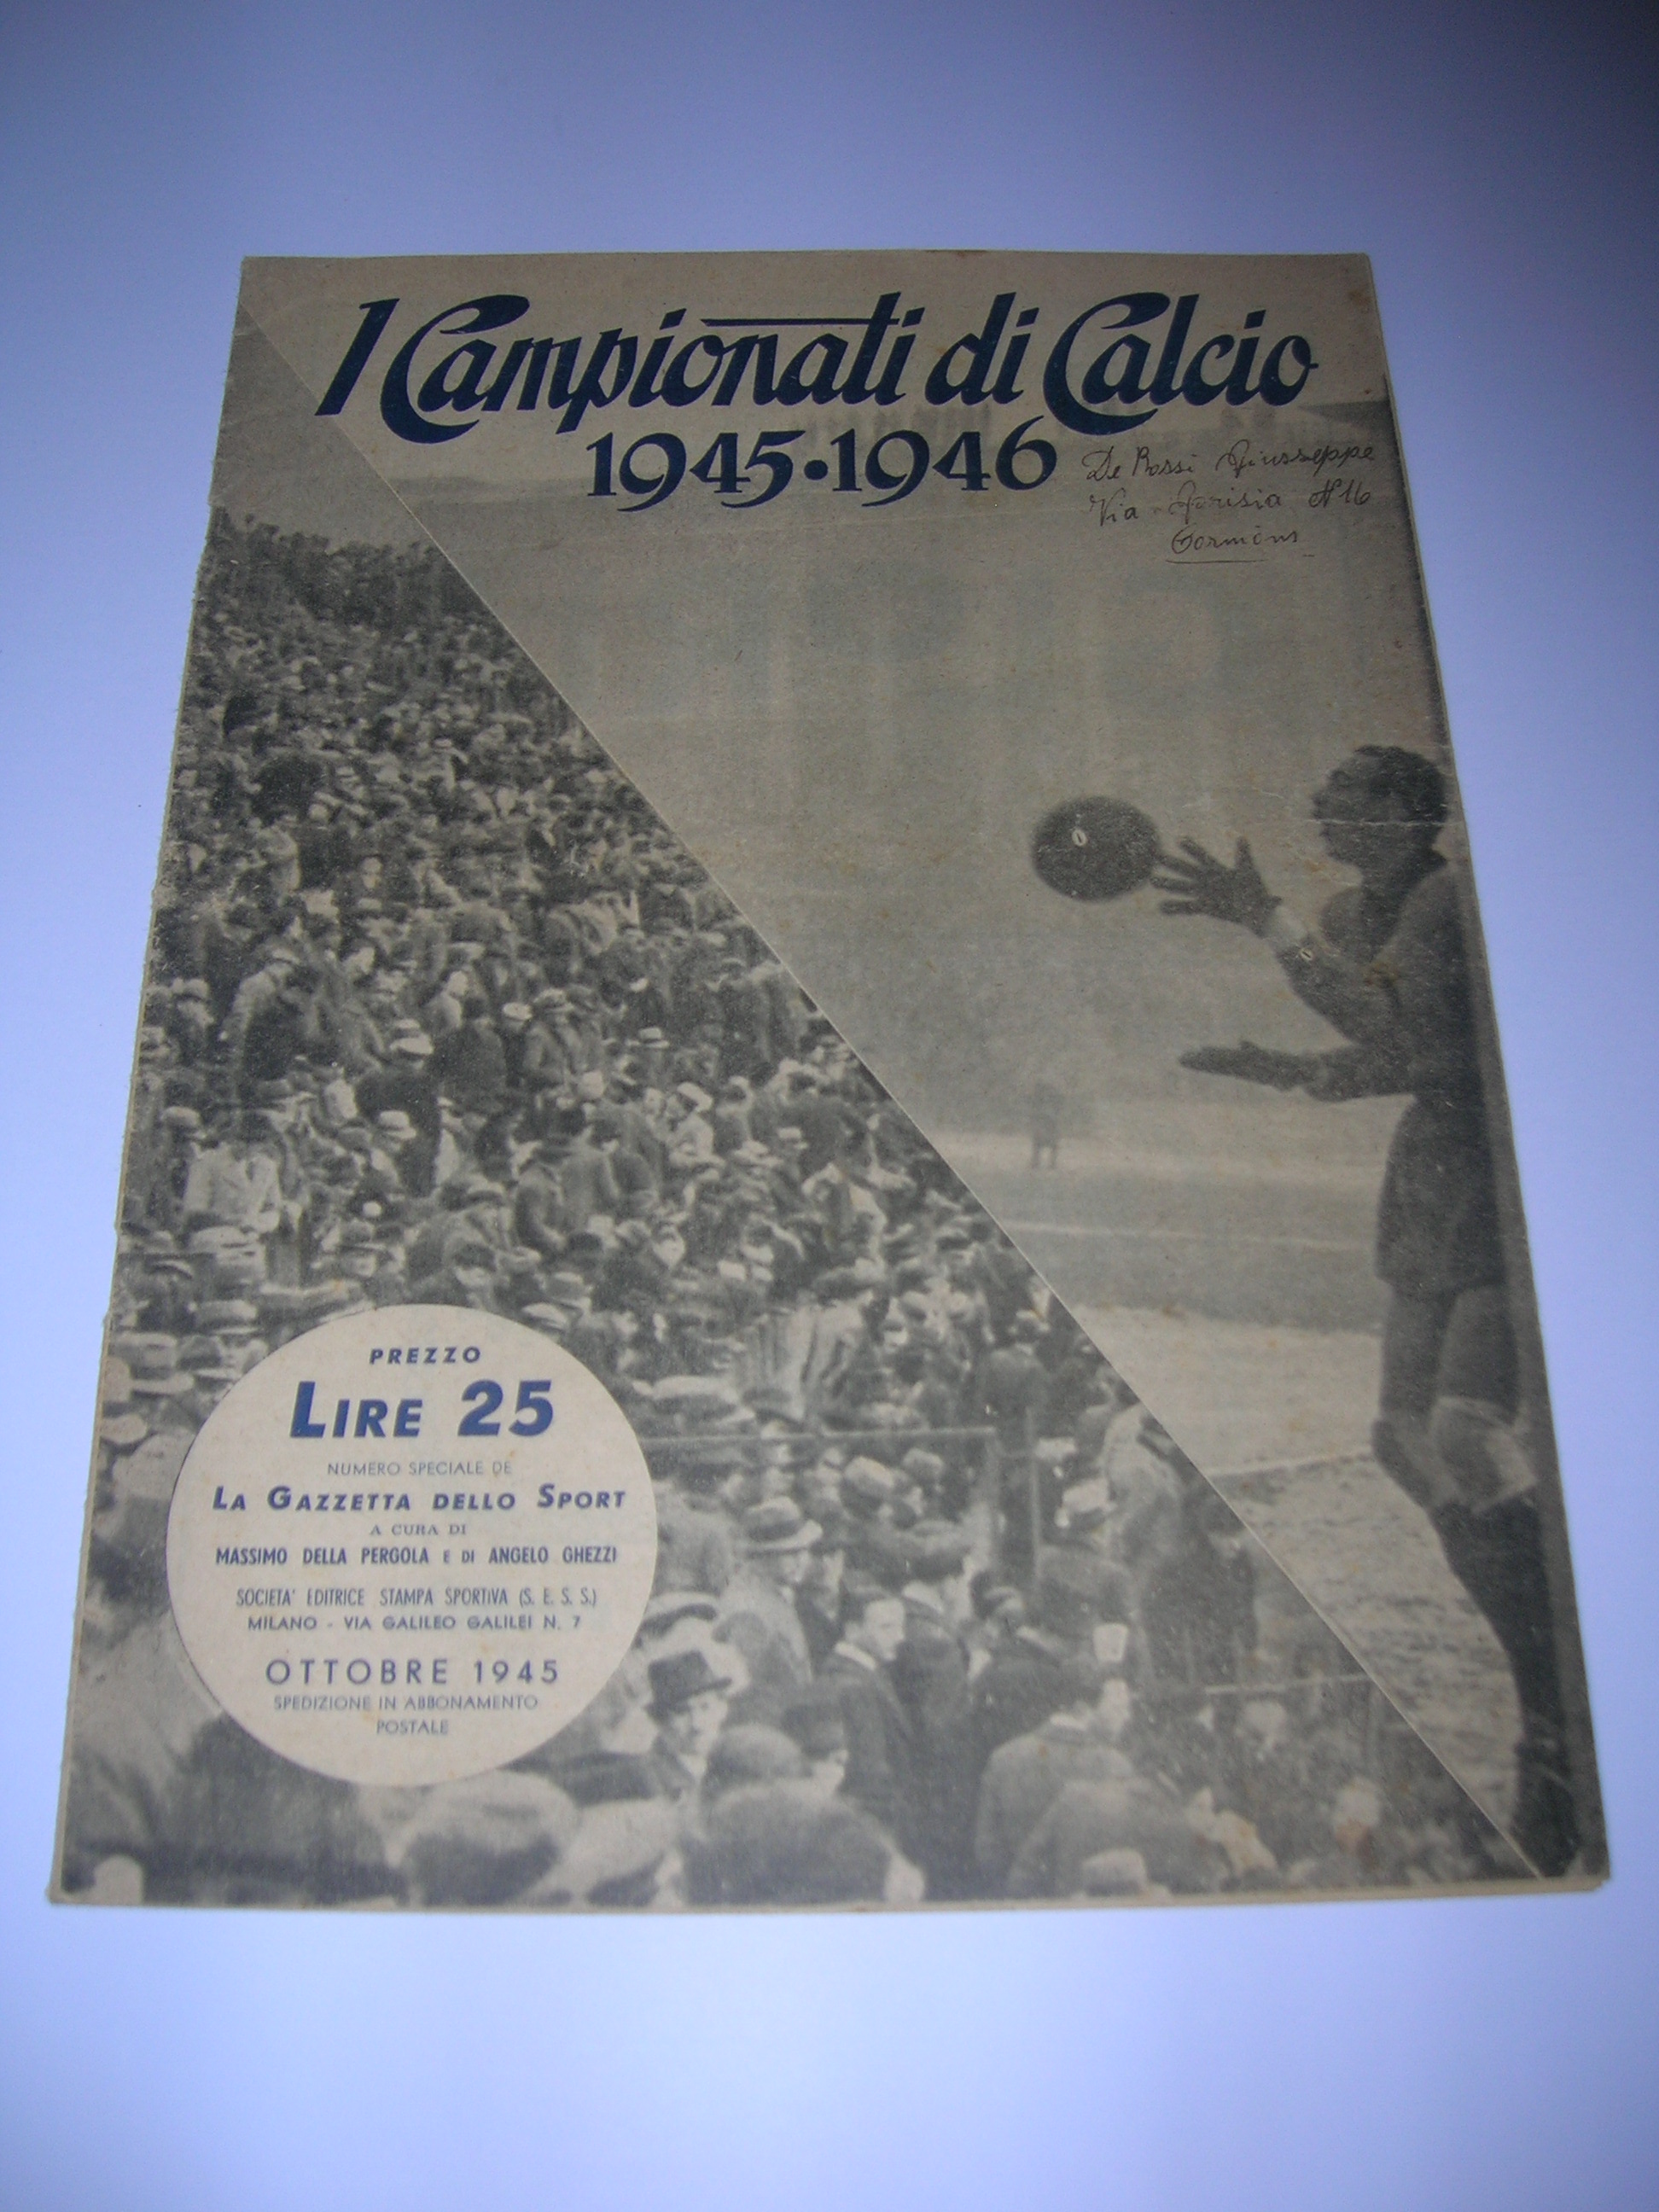 La Gazzetta delo Sport  1945-46  i campionatidi calcio